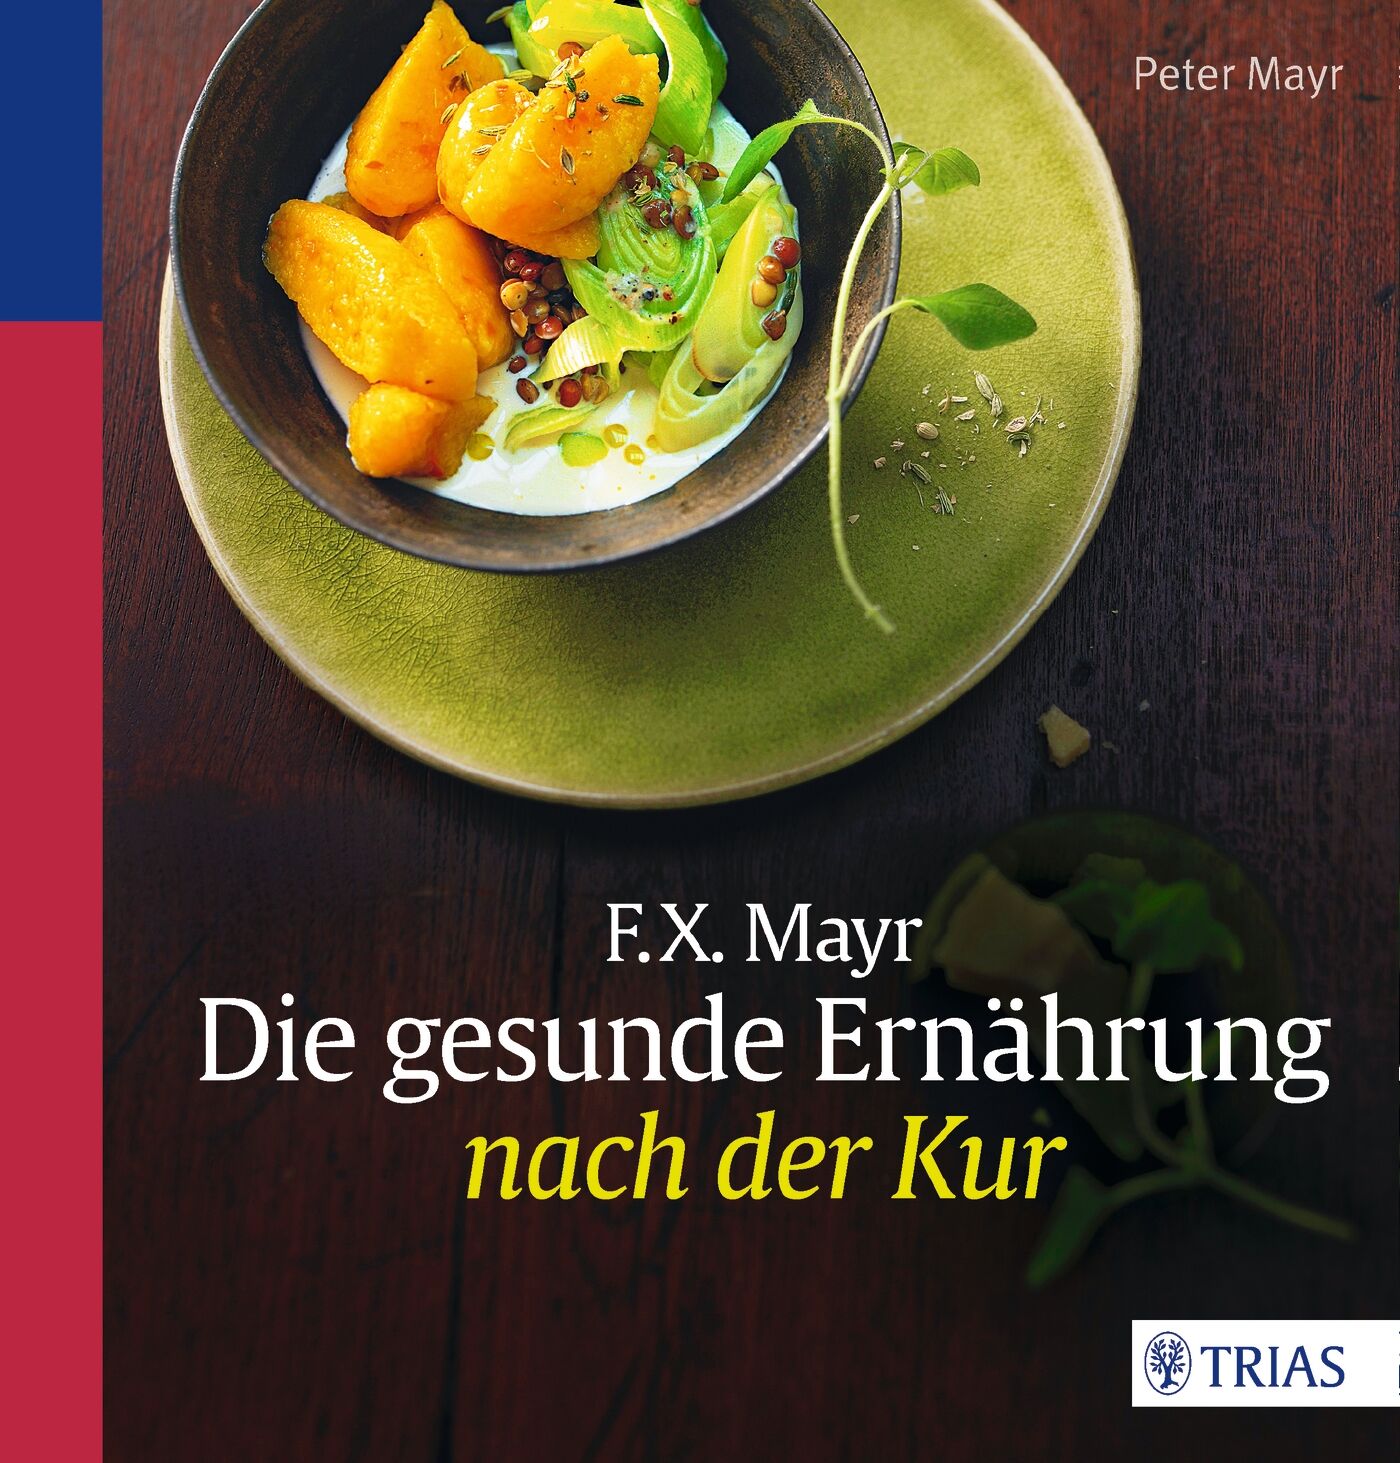 F.X. Mayr: Die gesunde Ernährung nach der Kur, 9783830484684